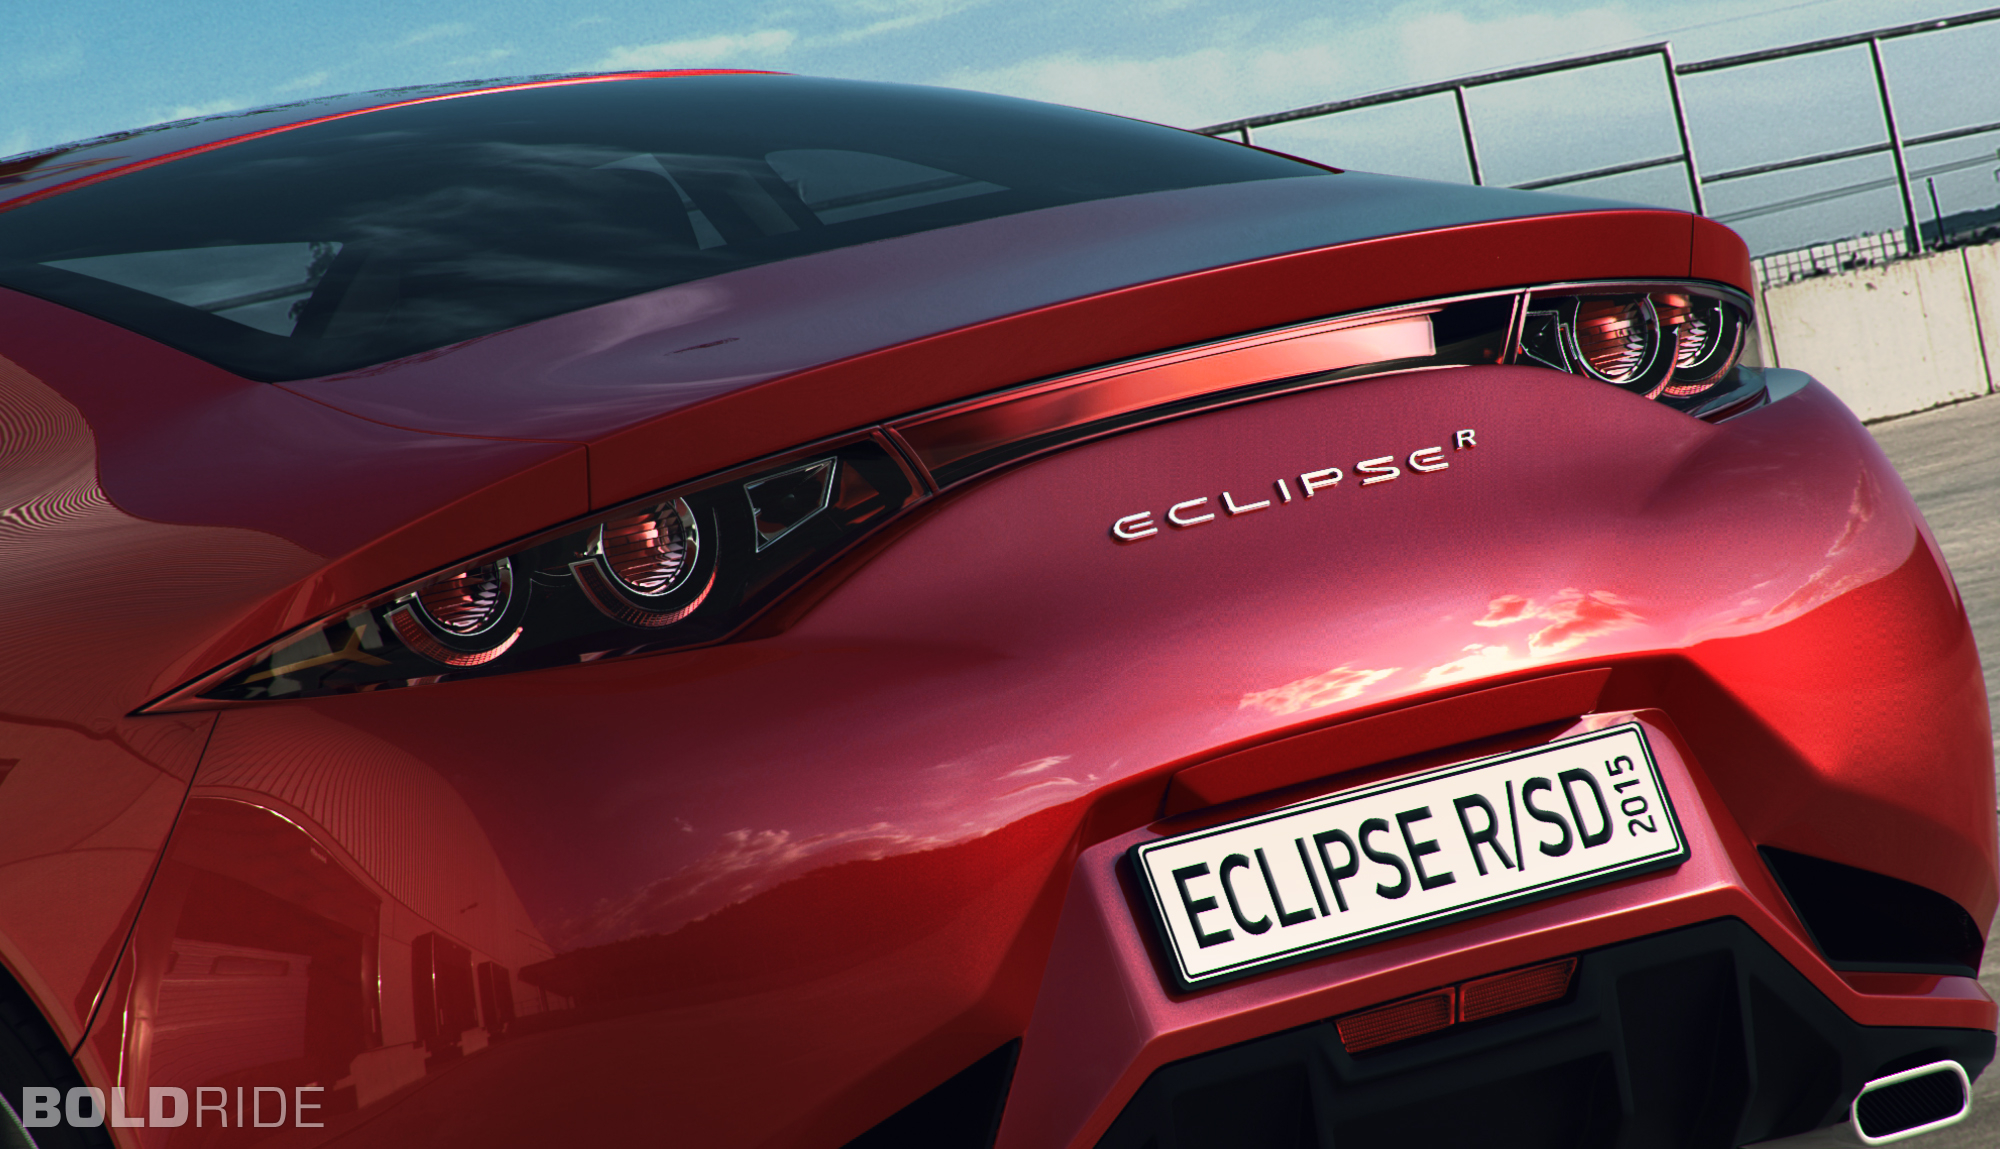 2015, Mitsubishi, Eclipse, R, Concept,  11 Wallpaper